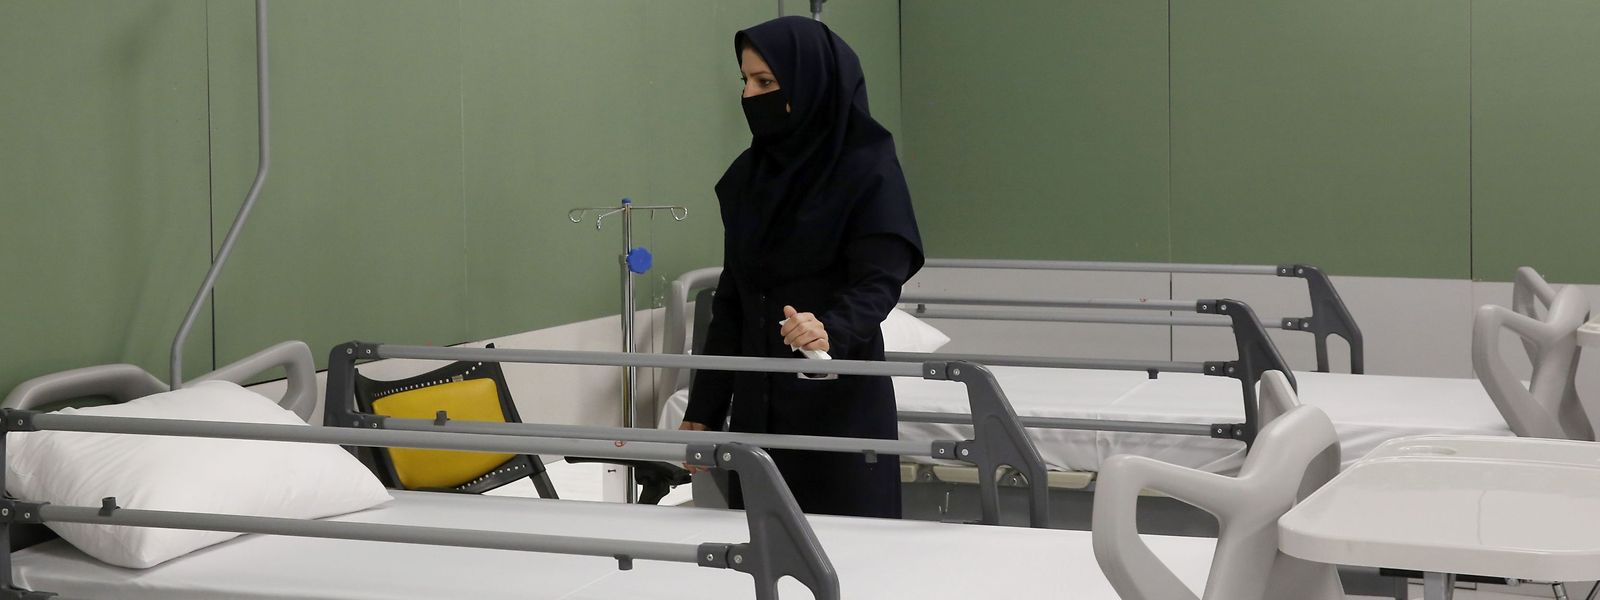 Inspektorin besucht Krankenhaus in Teheran. Nach offiziellen Zahlen haben sich bisher 24811 Iraner mit Covid 19 infiziert. 